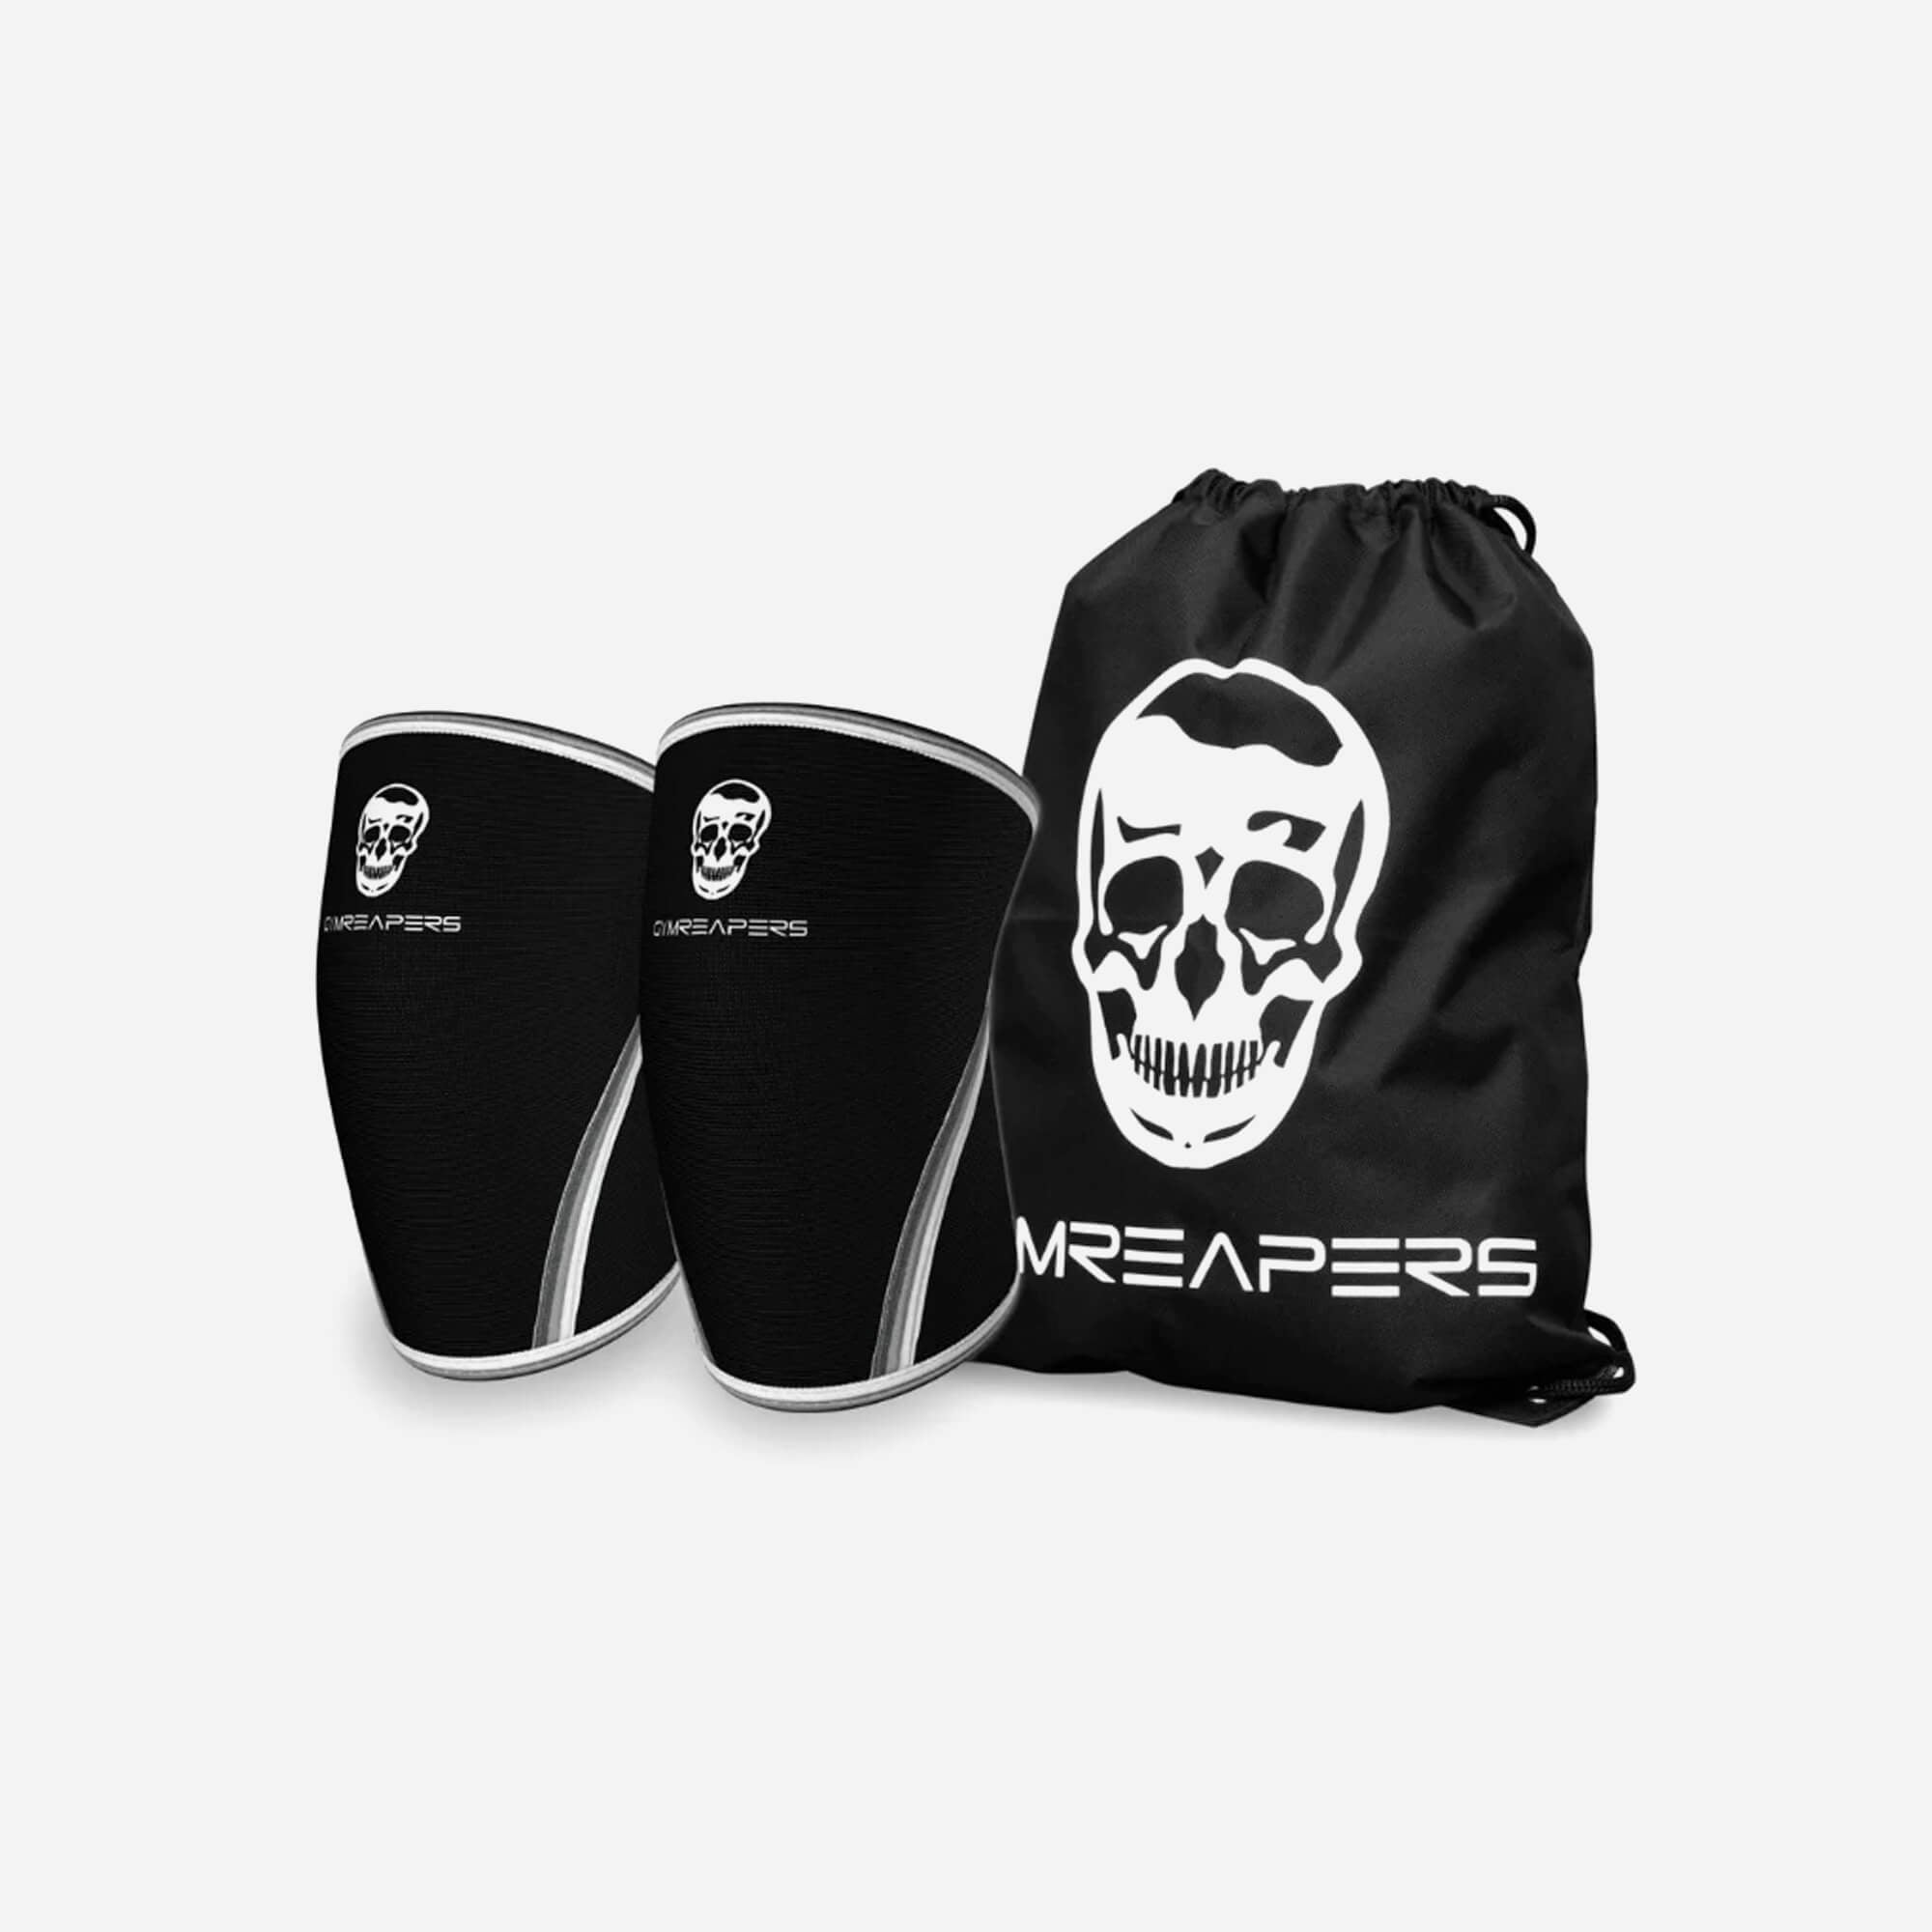 7mm knee sleeves black carry bag